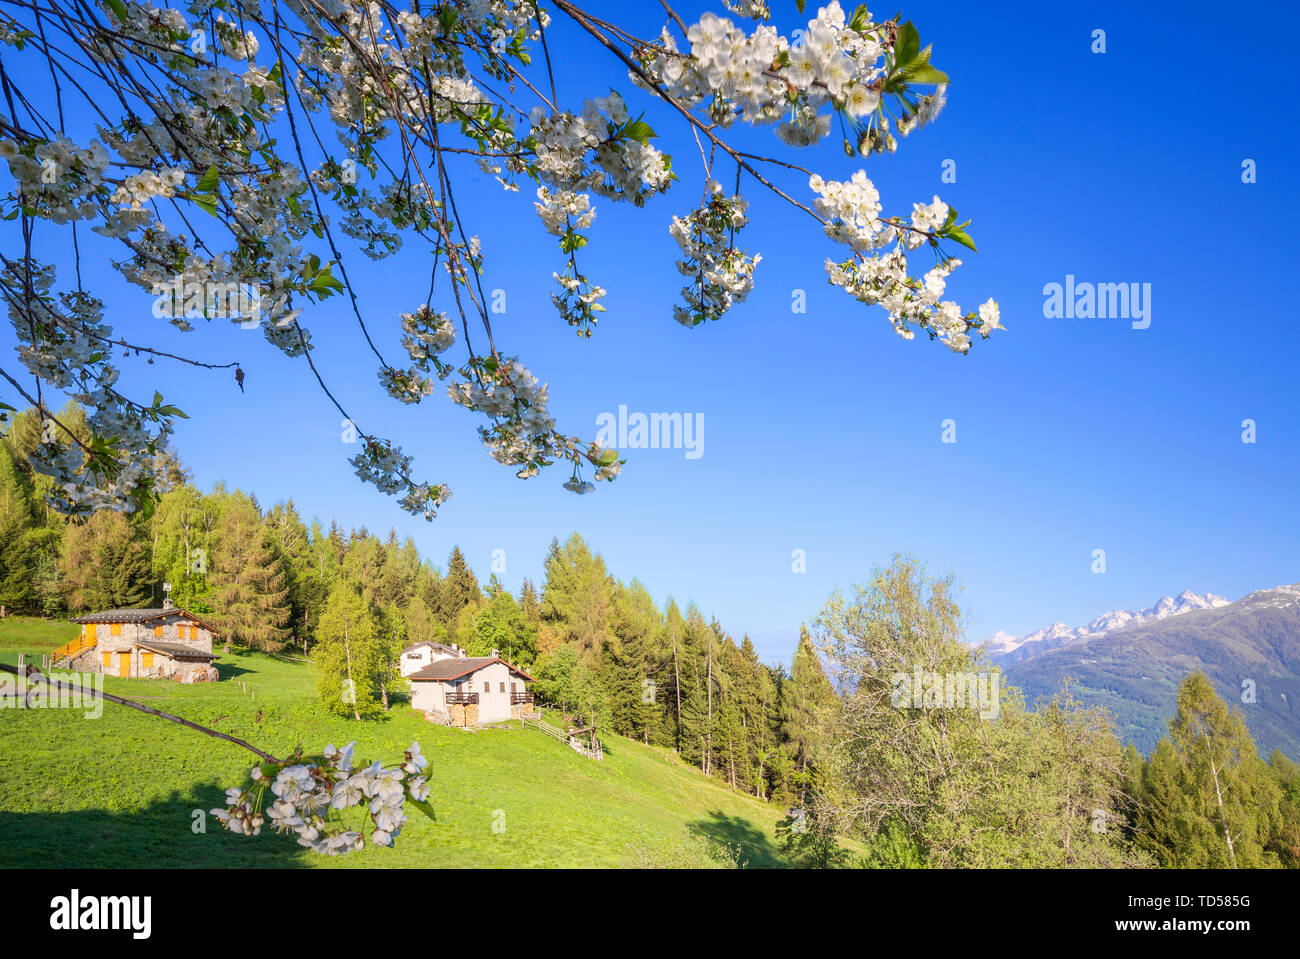 Floweing ciliegio a Pian di Gembro, Aprica, Alpi Orobie, Valtellina, Lombardia, Italia, Europa Foto Stock